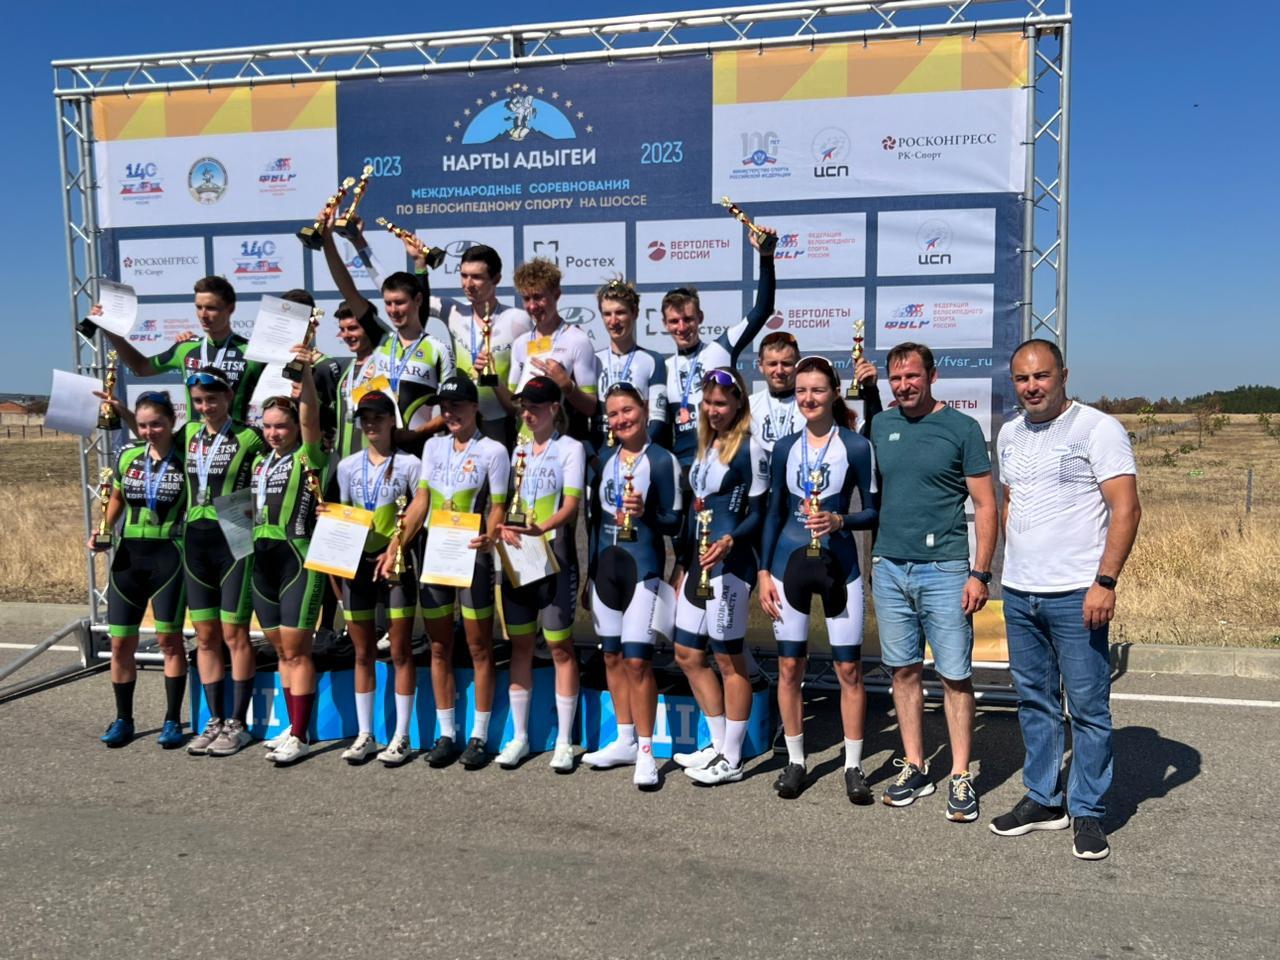 Орловские велосипедисты докатились до бронзовых наград во Всероссийской гонке
